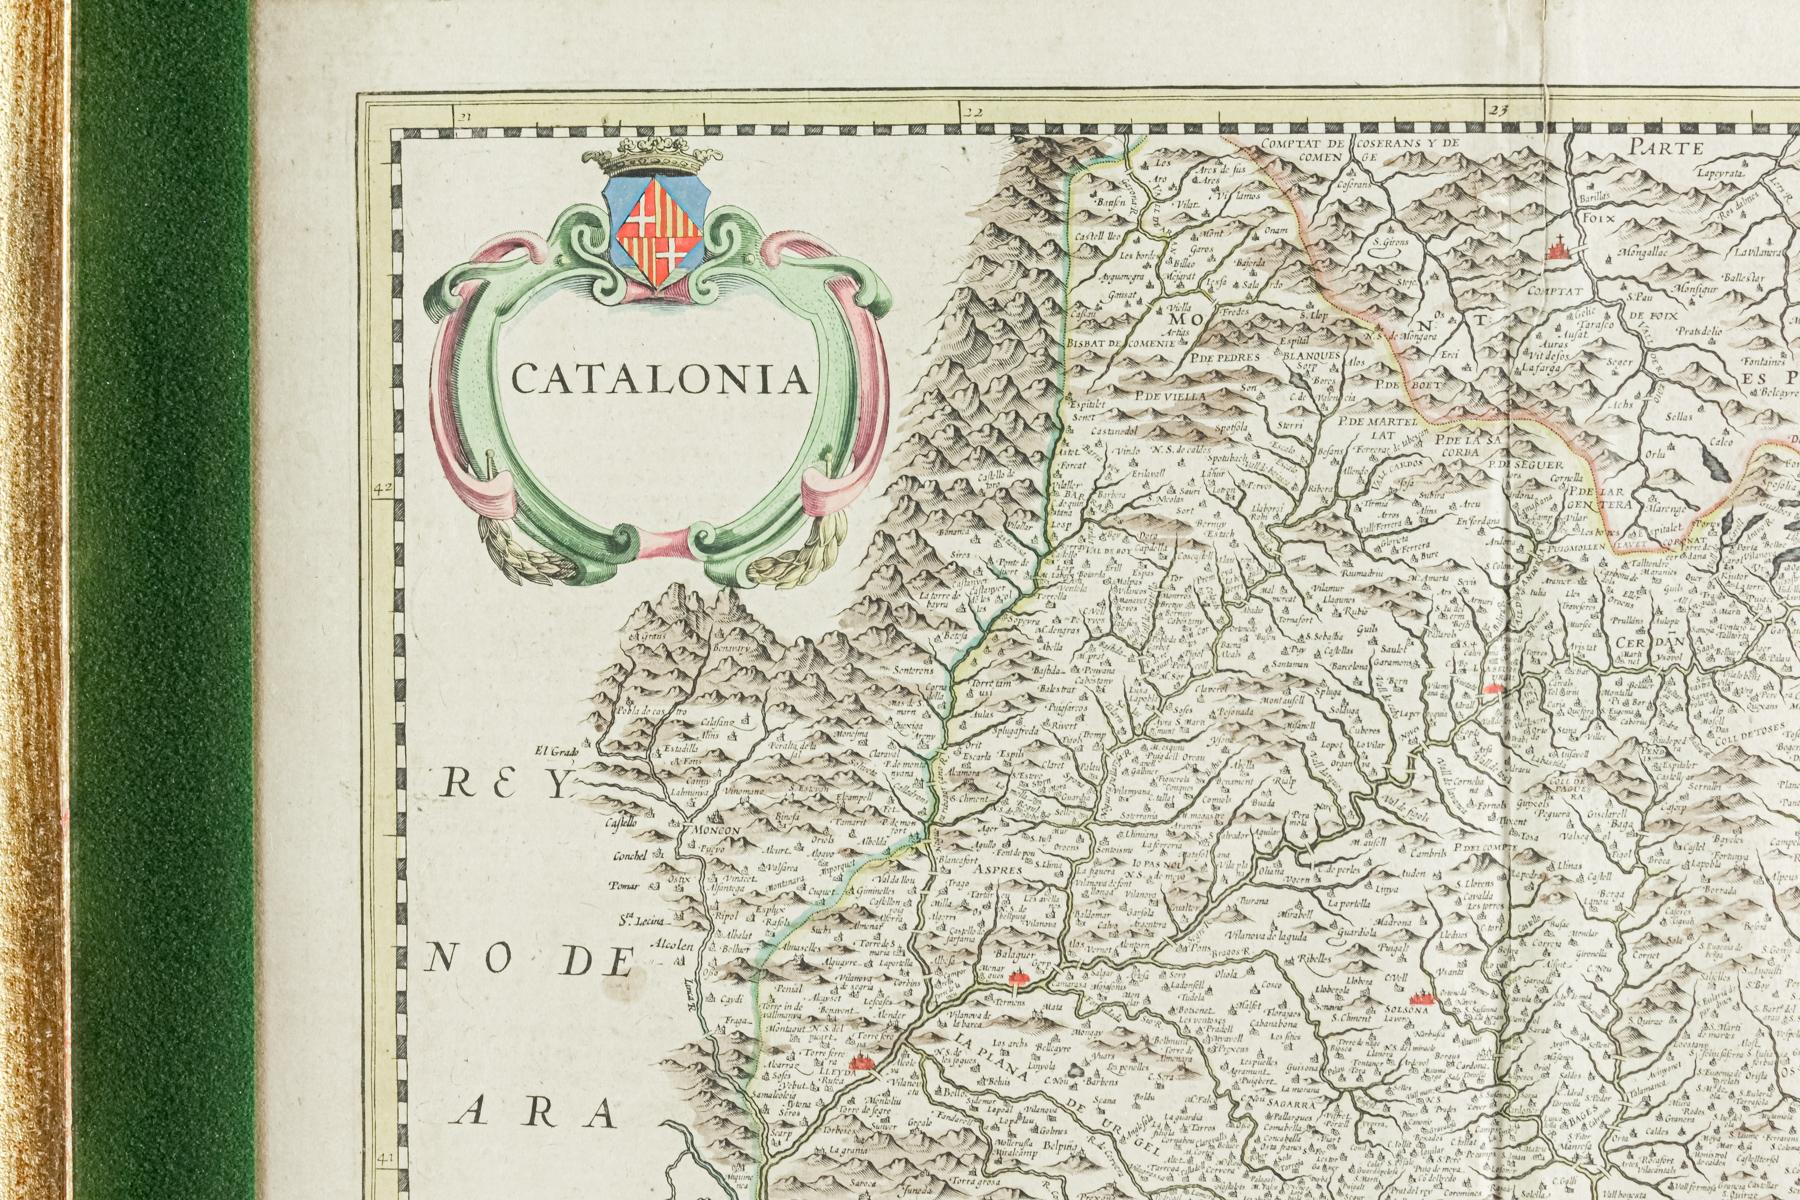 MAPA DE CATALUÑA CIRCA 1652